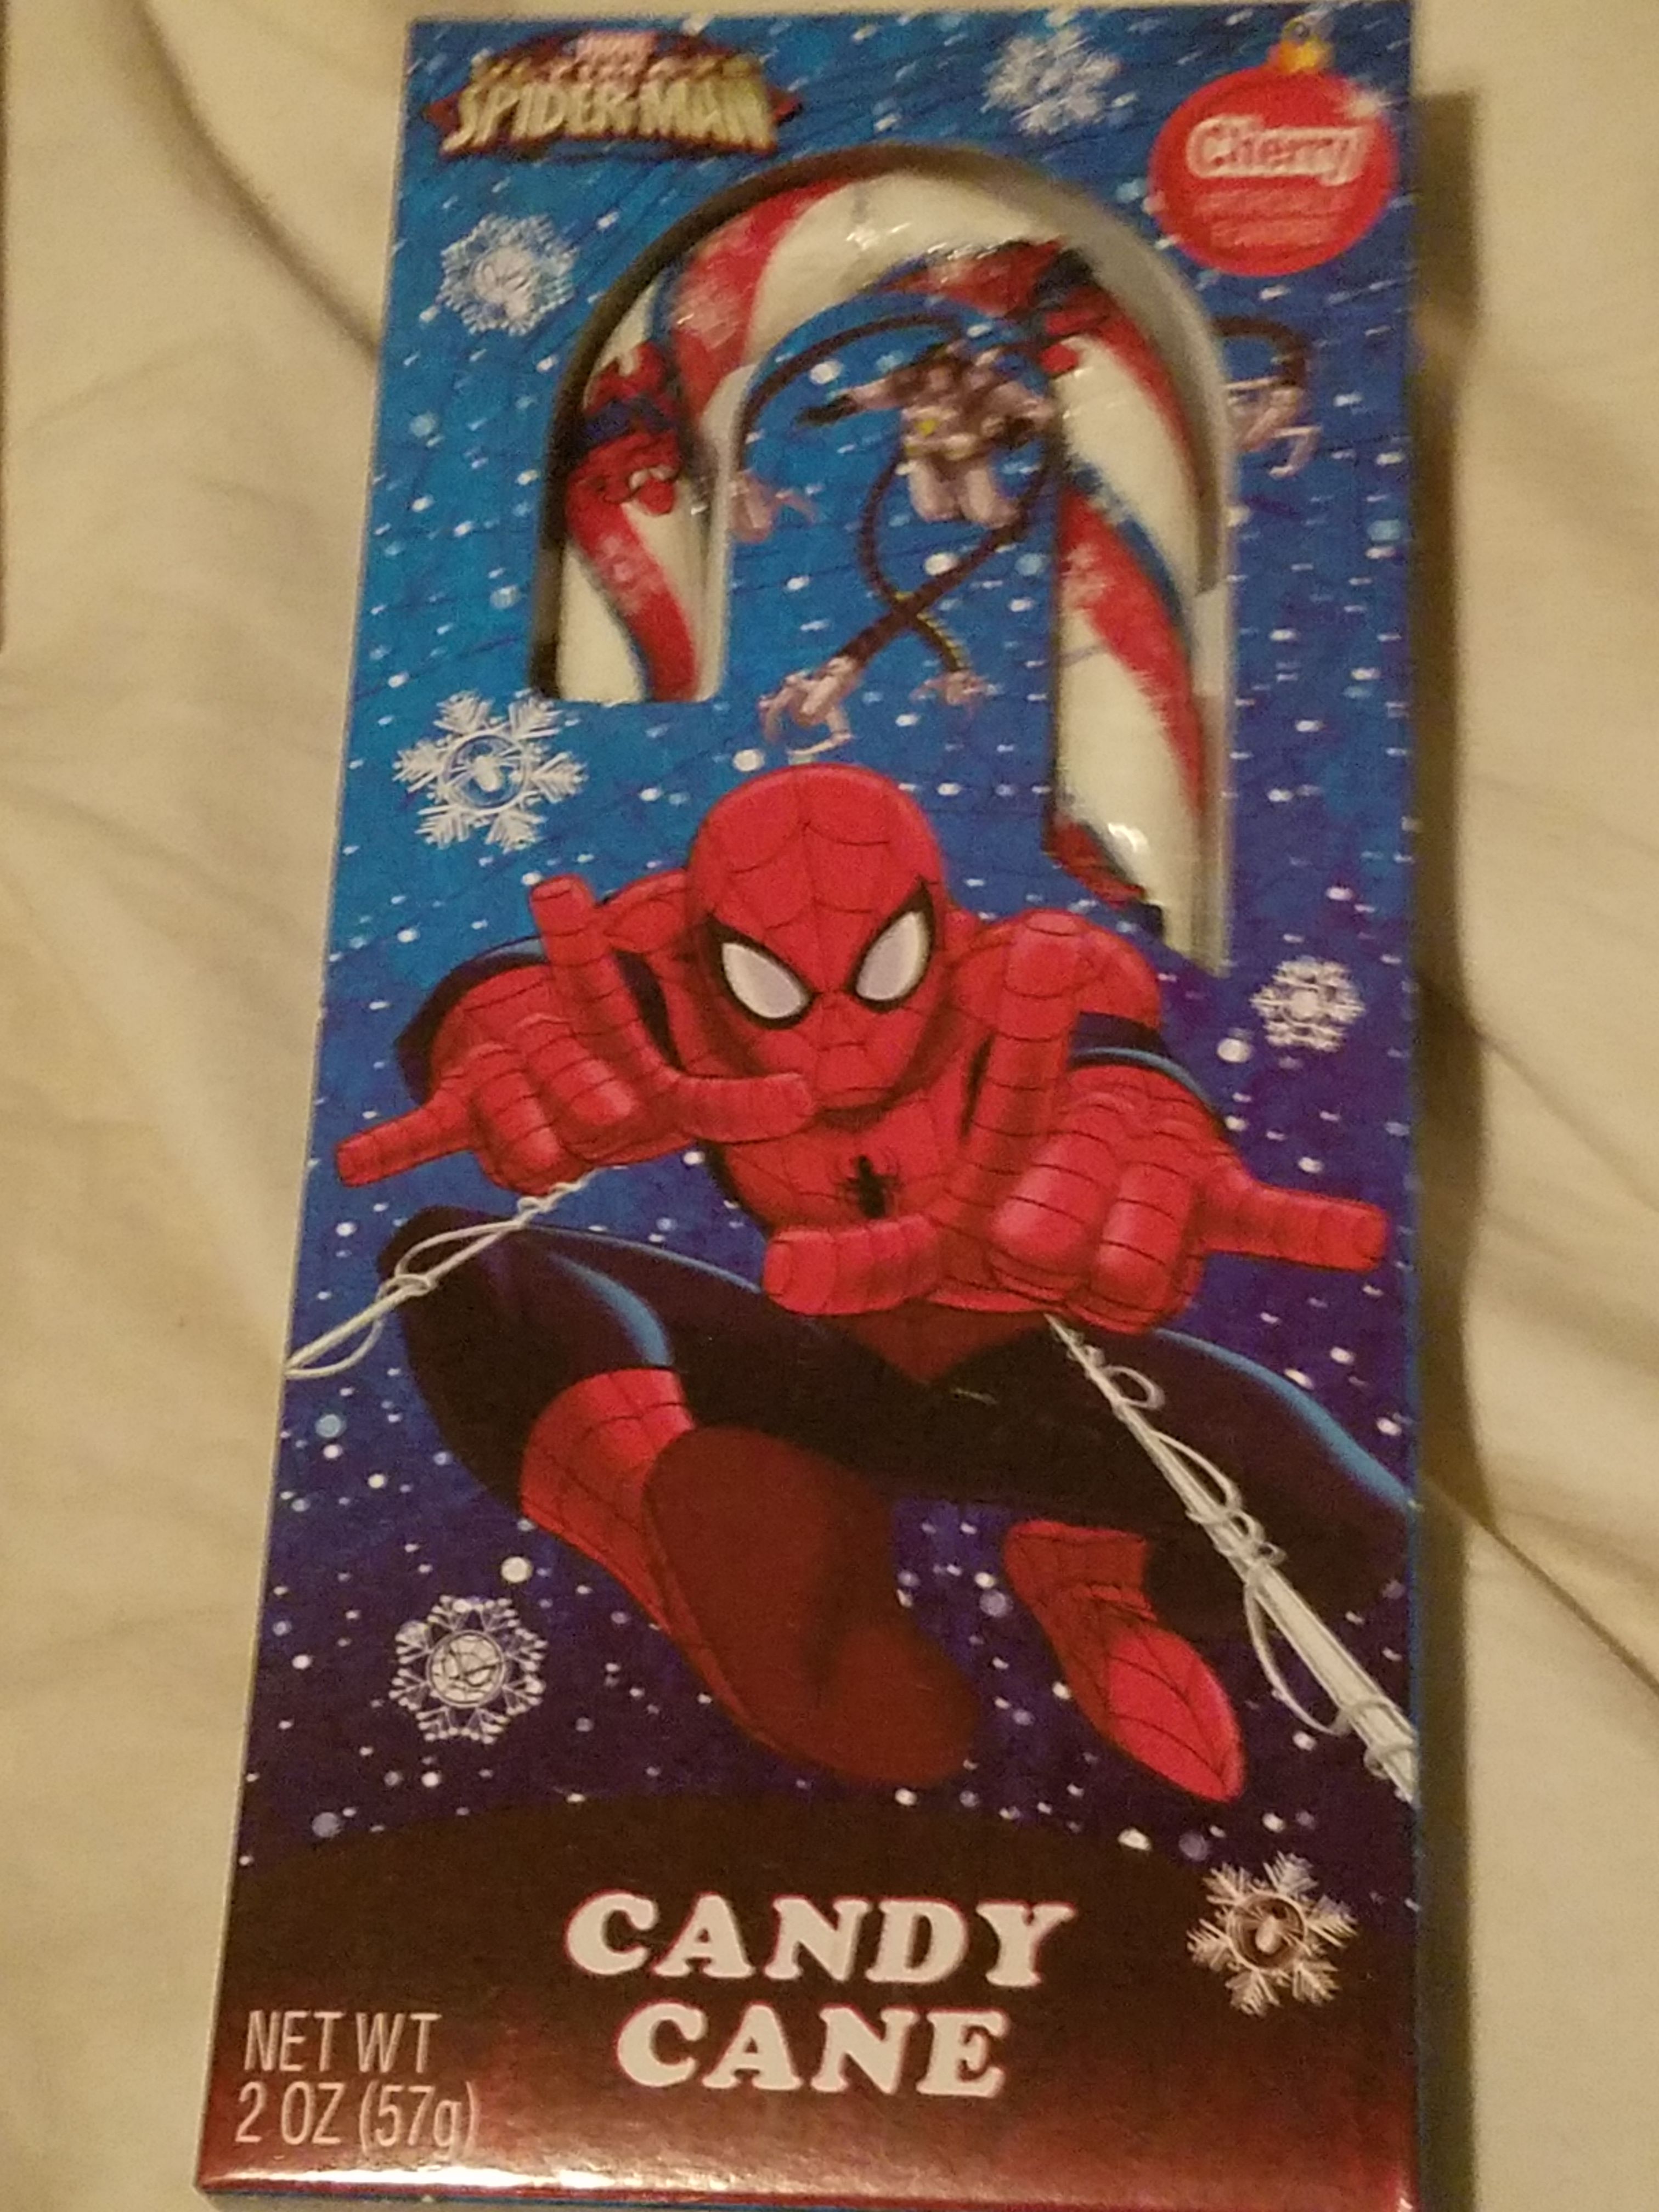 Spider man candy cane